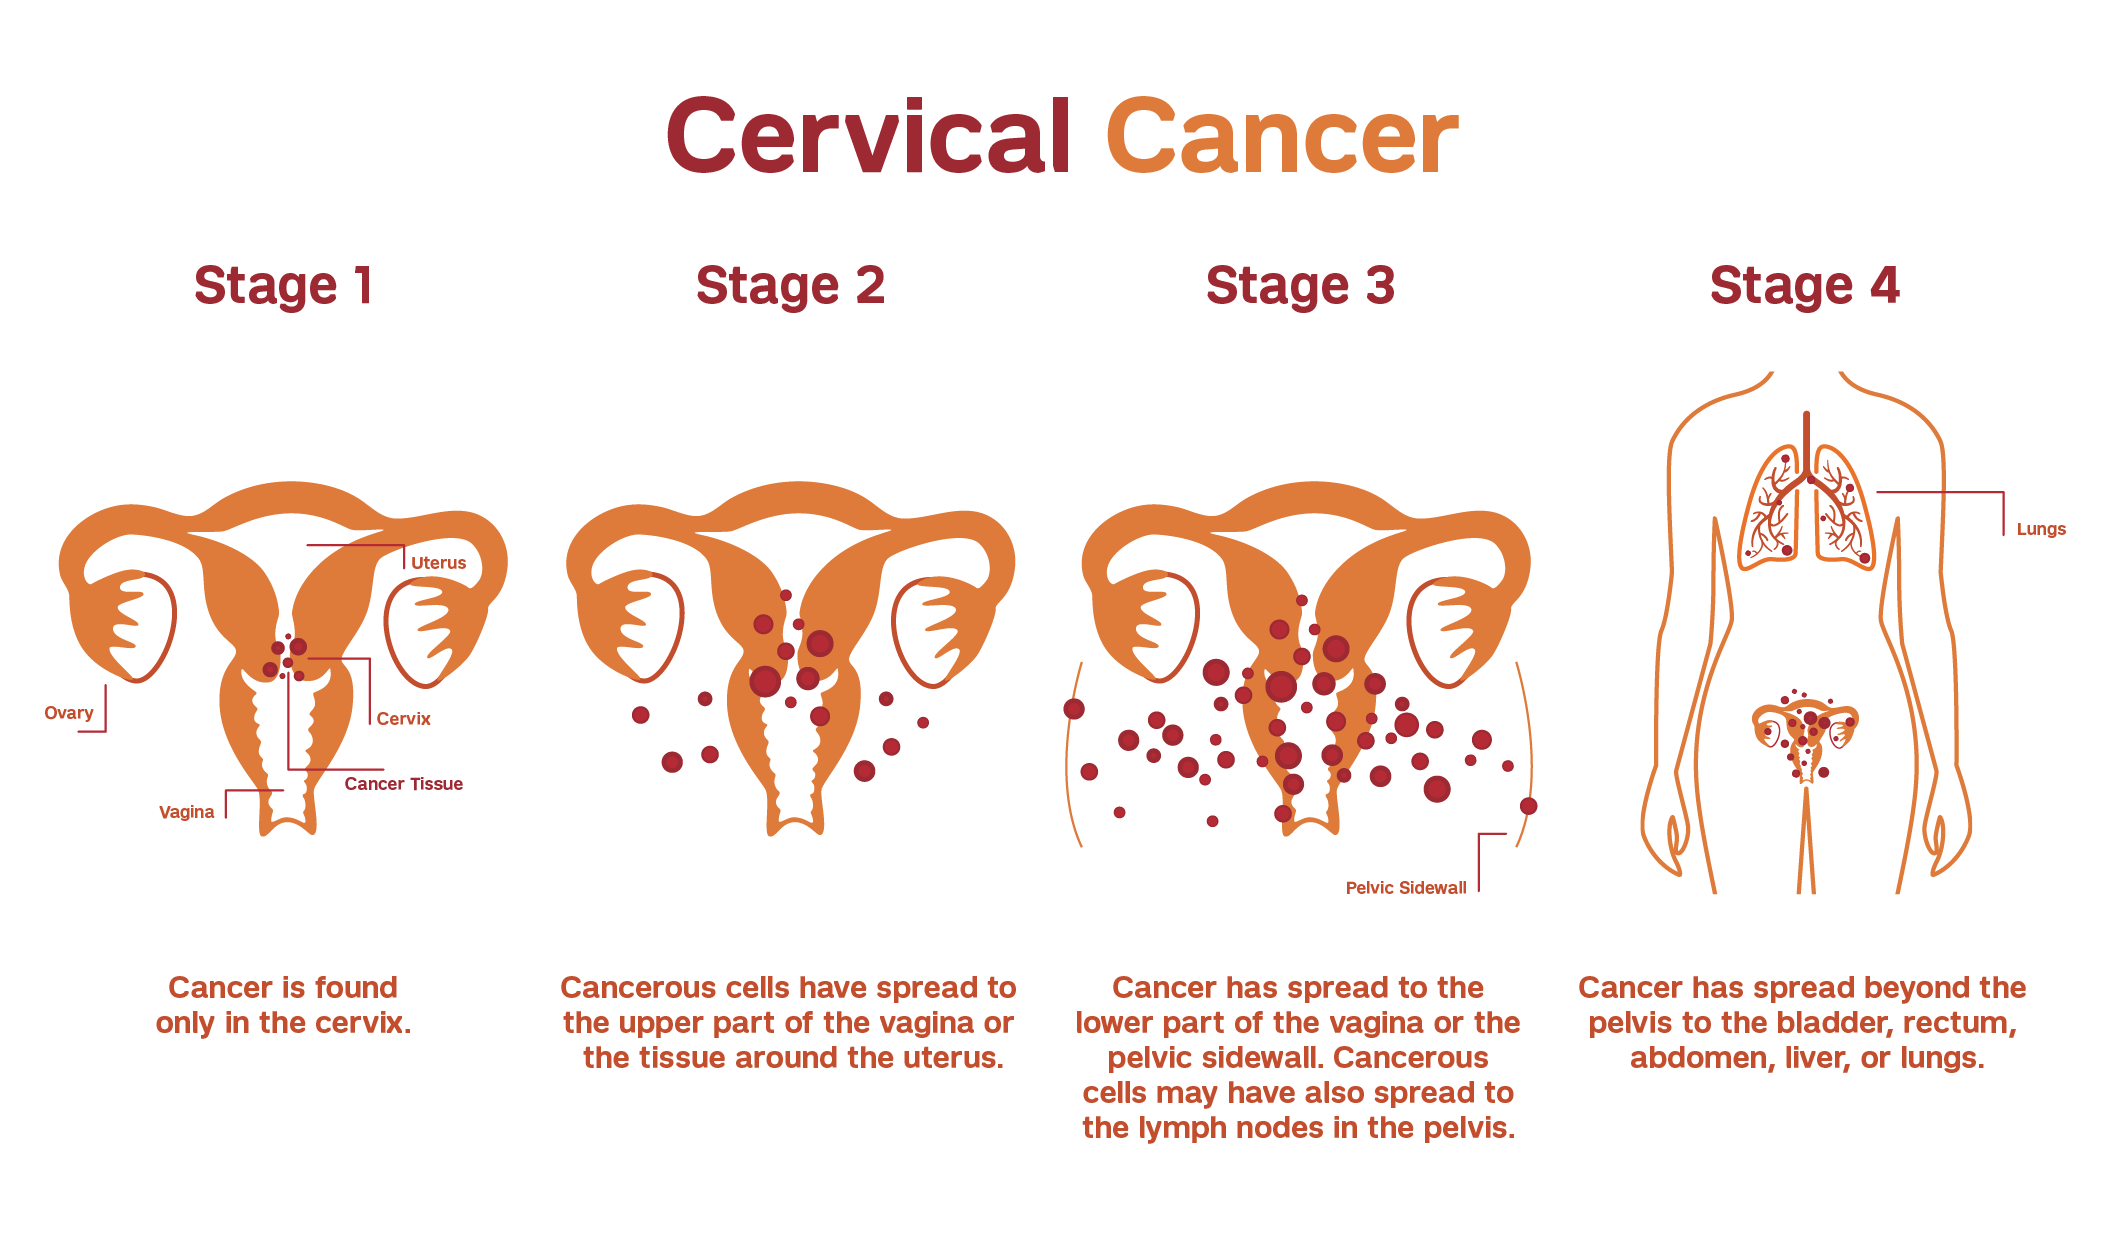 keynote 158 cervical cancer